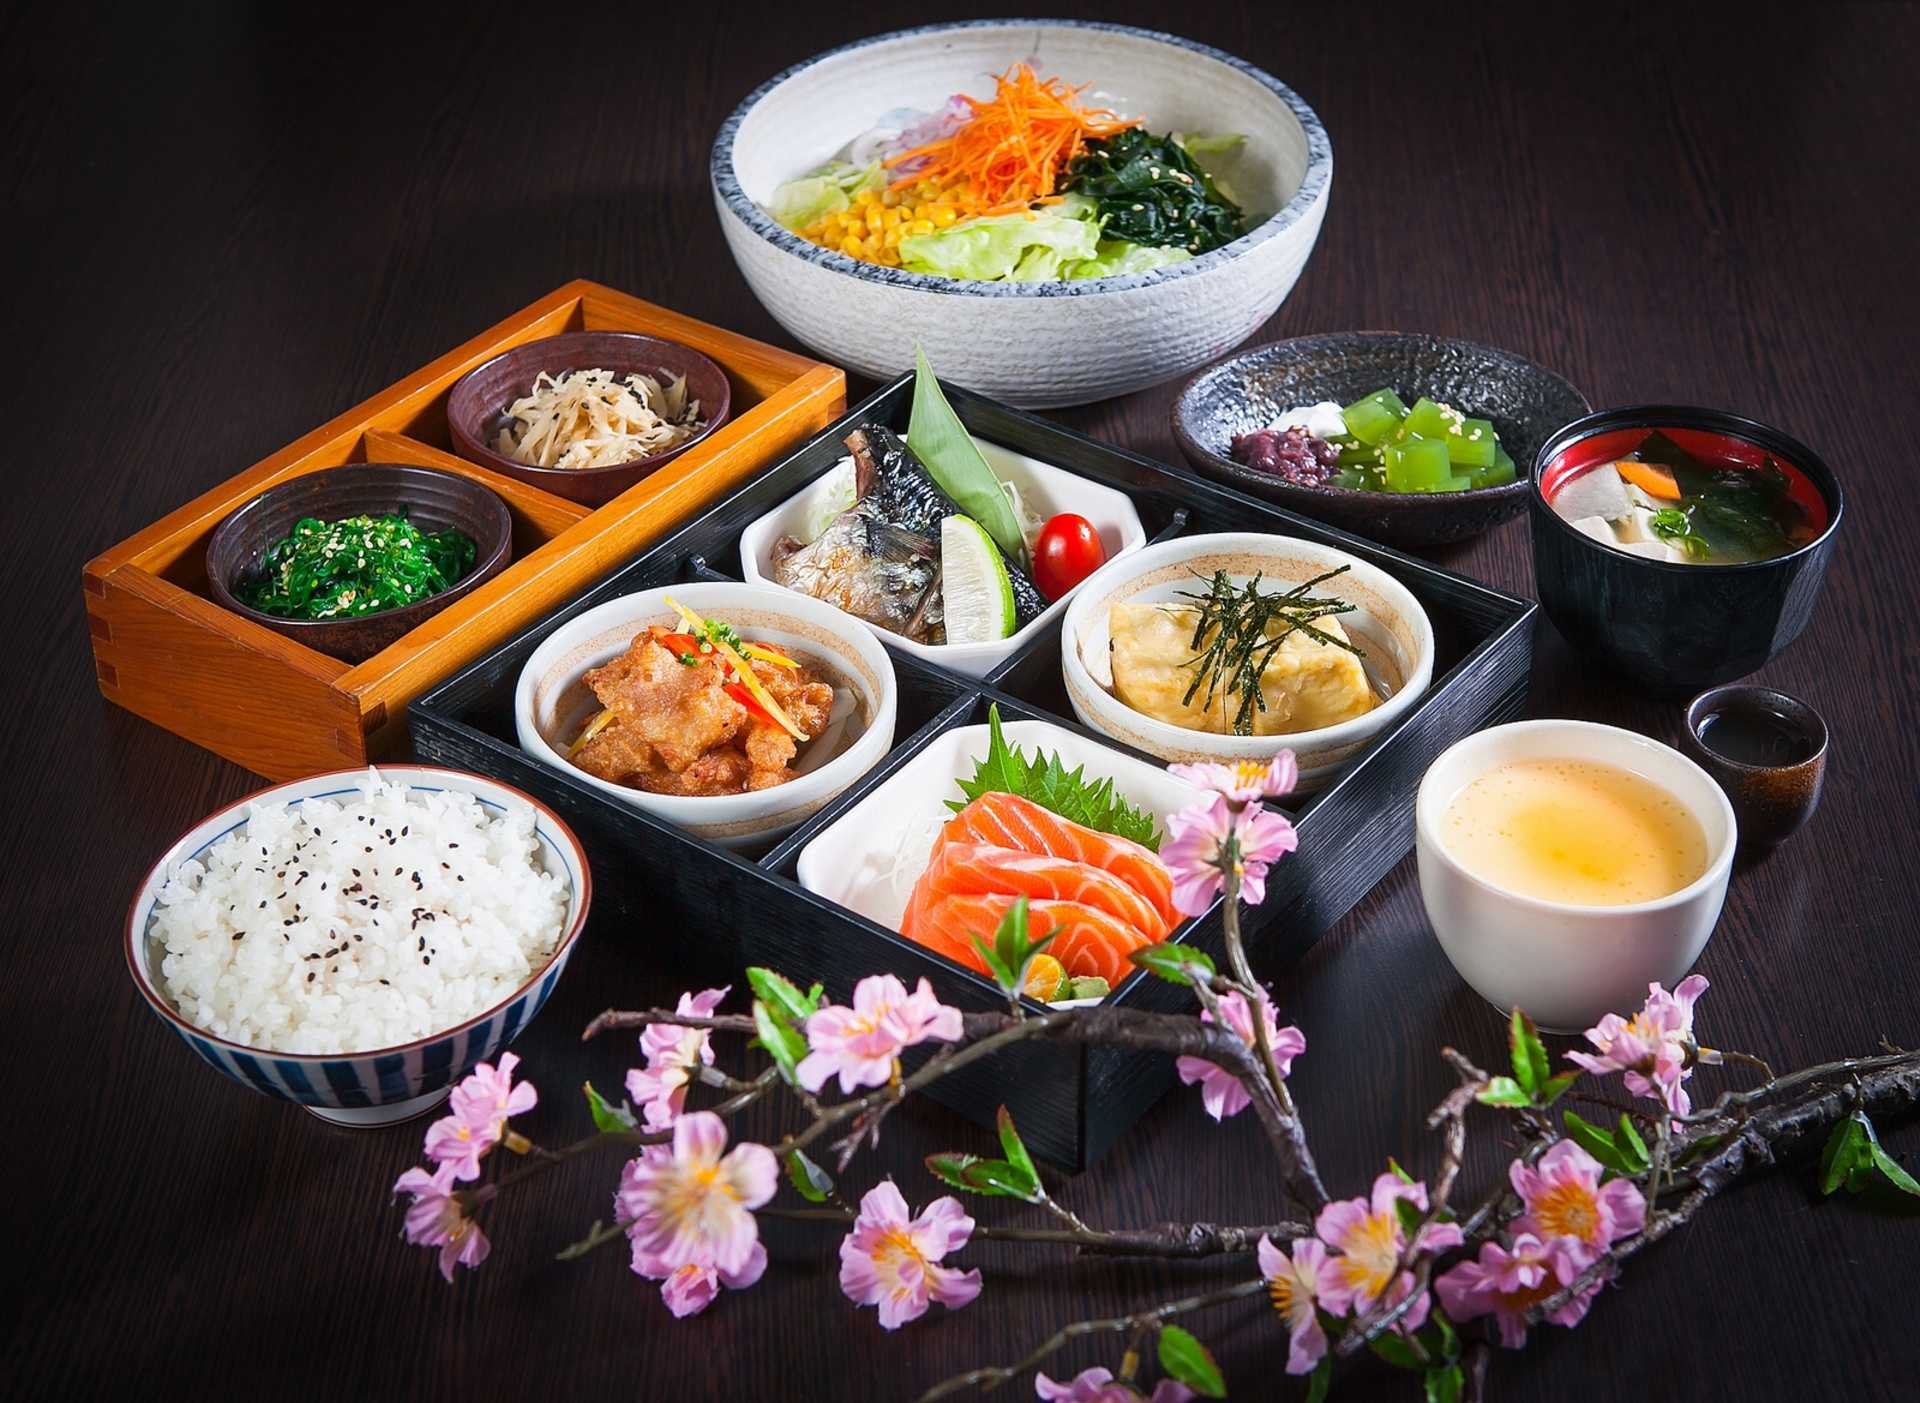 Самые популярные национальные блюда, которые предлагают в ресторанах японской кухни Как они правильно называются, из чего их традиционно готовят, интересные факты по подаче и приготовлению